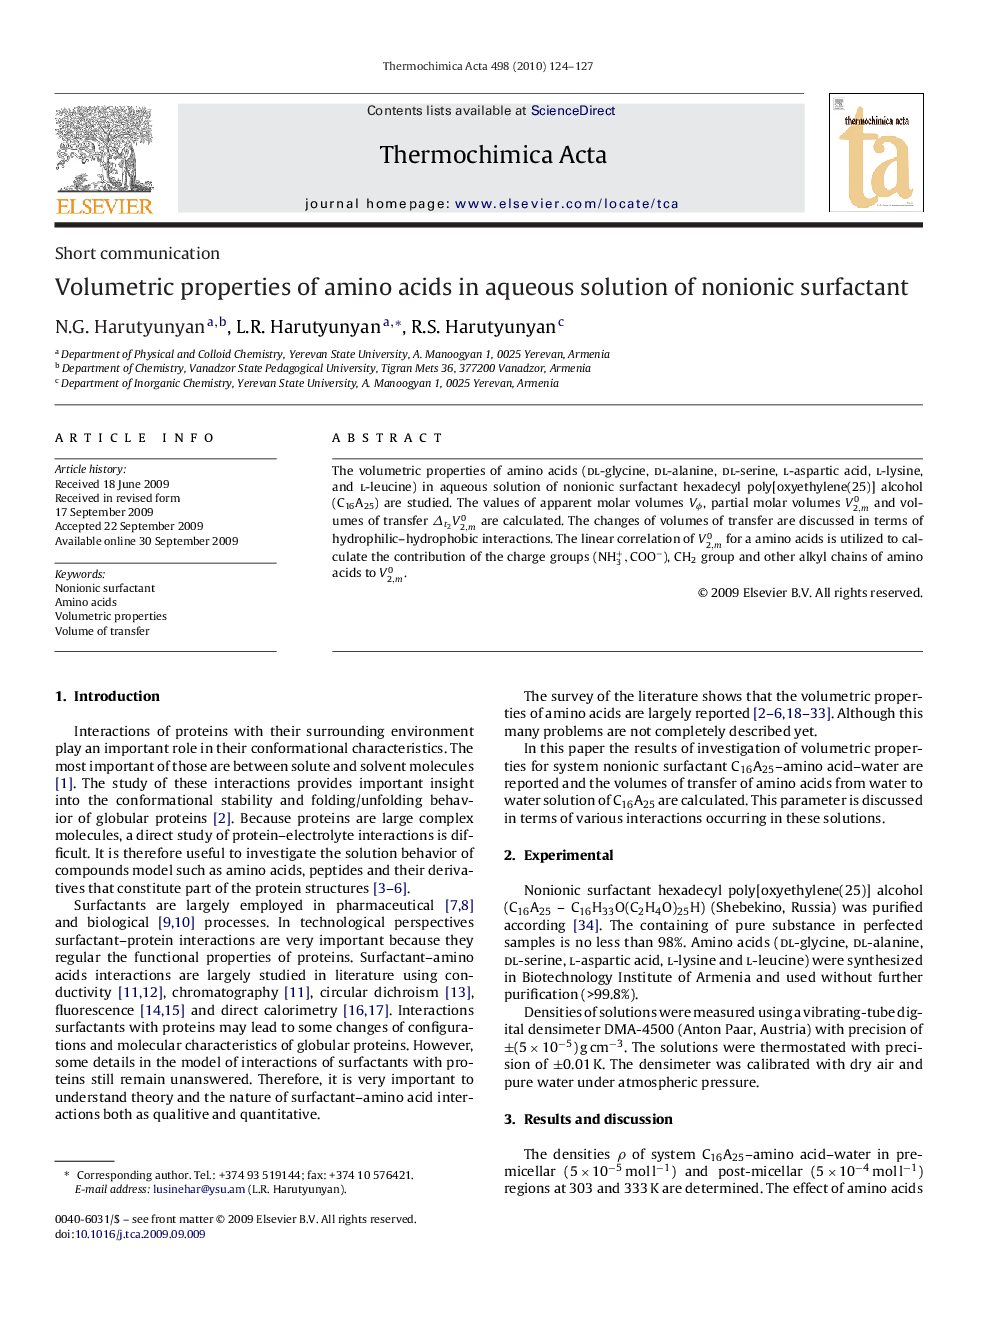 Volumetric properties of amino acids in aqueous solution of nonionic surfactant